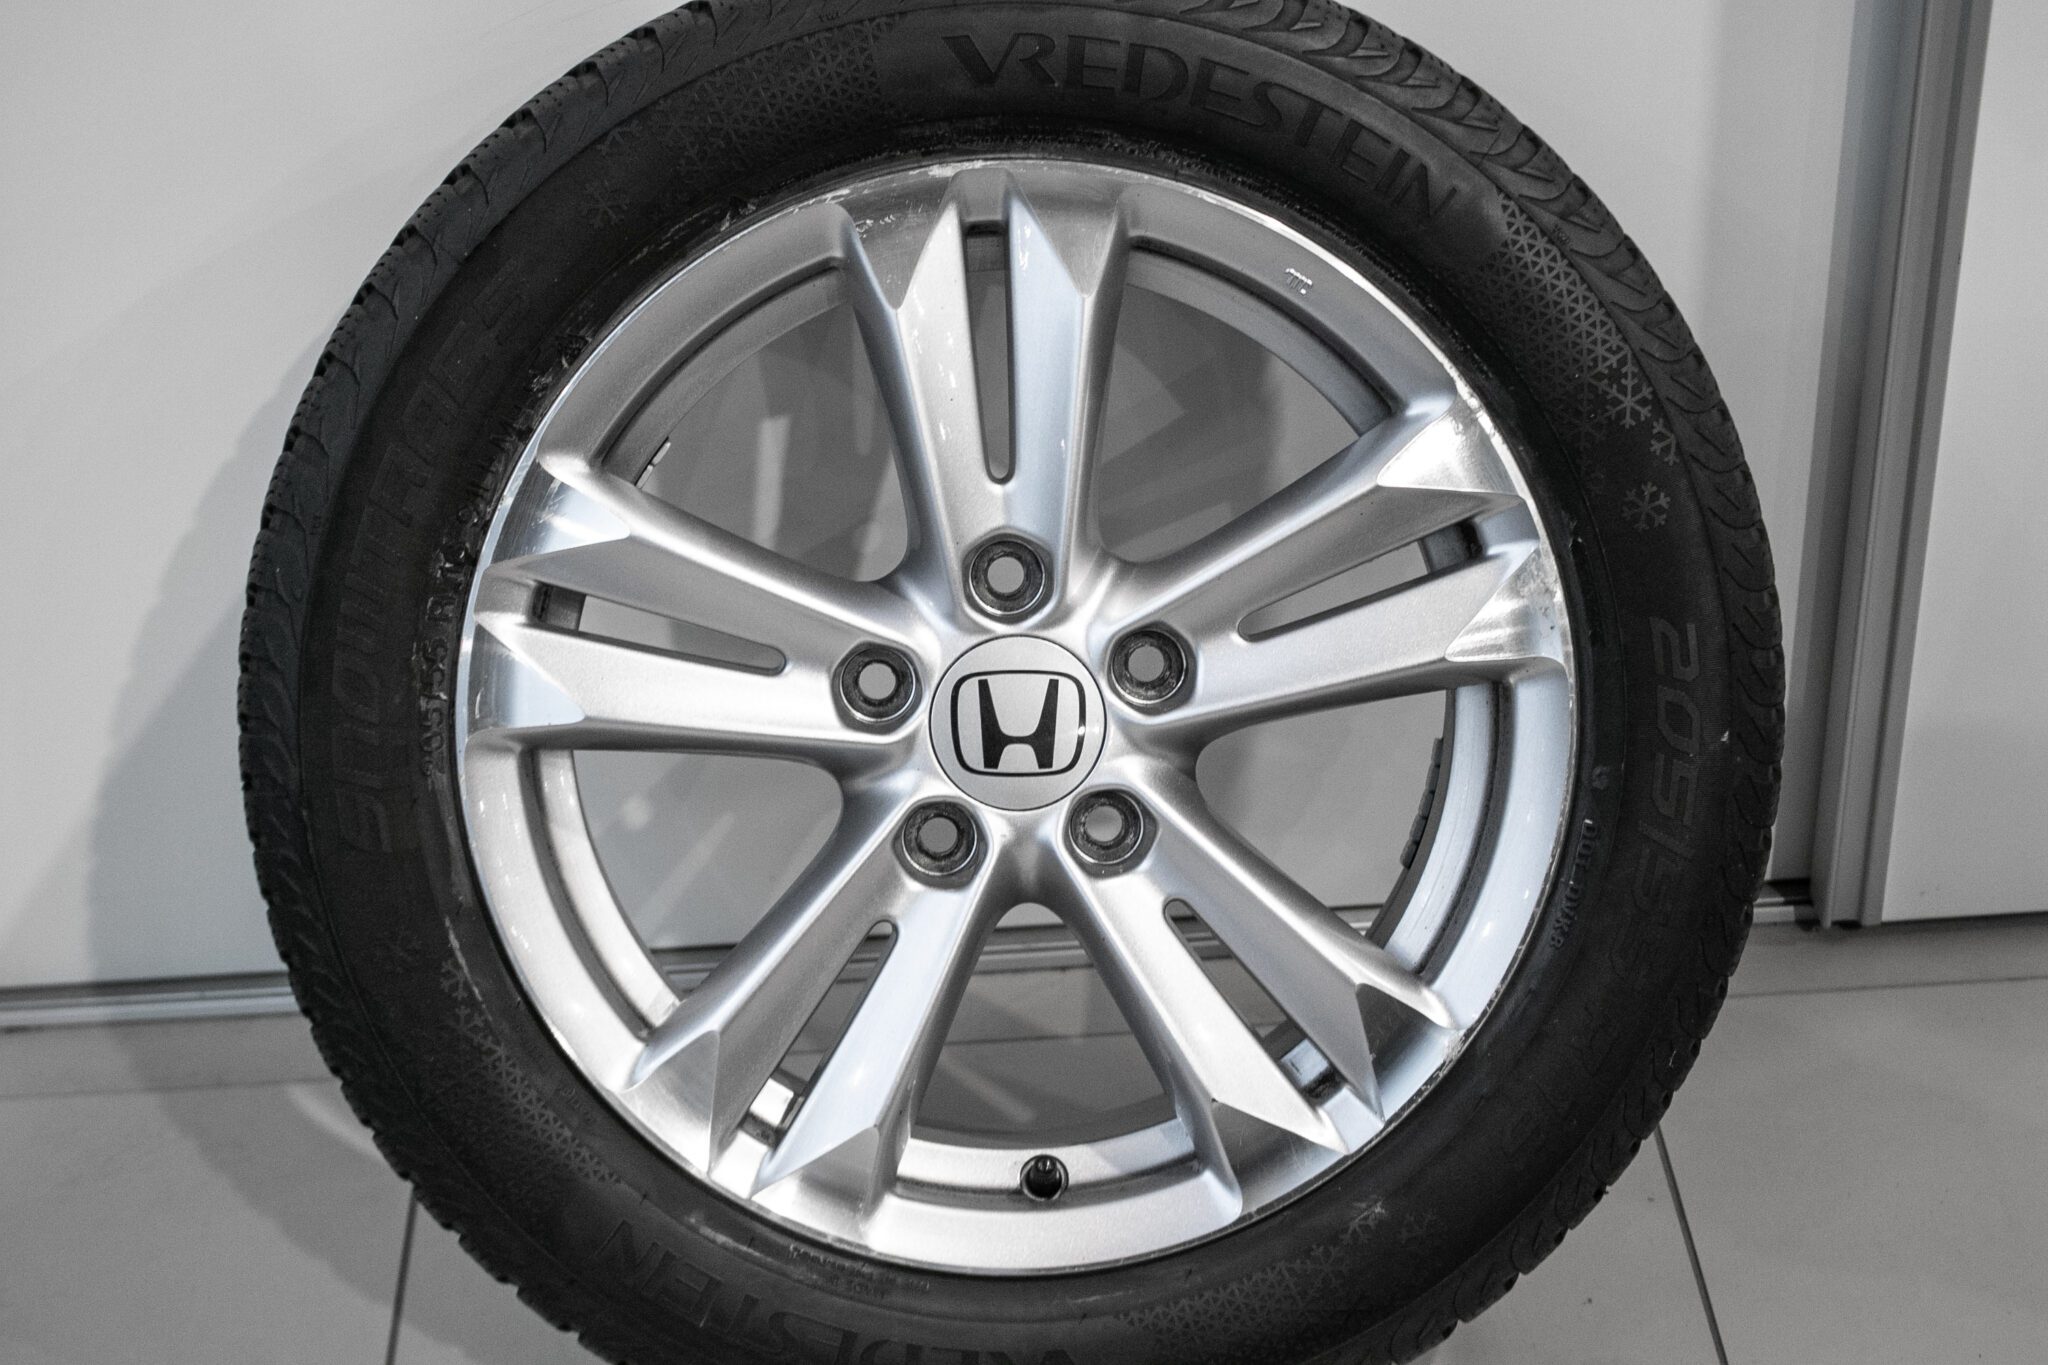 16" Winterwielen voor de Honda Civic hybrid, FR-V en de Accord
€150,-
gebruikt. Profieldiepte: 5.5mm